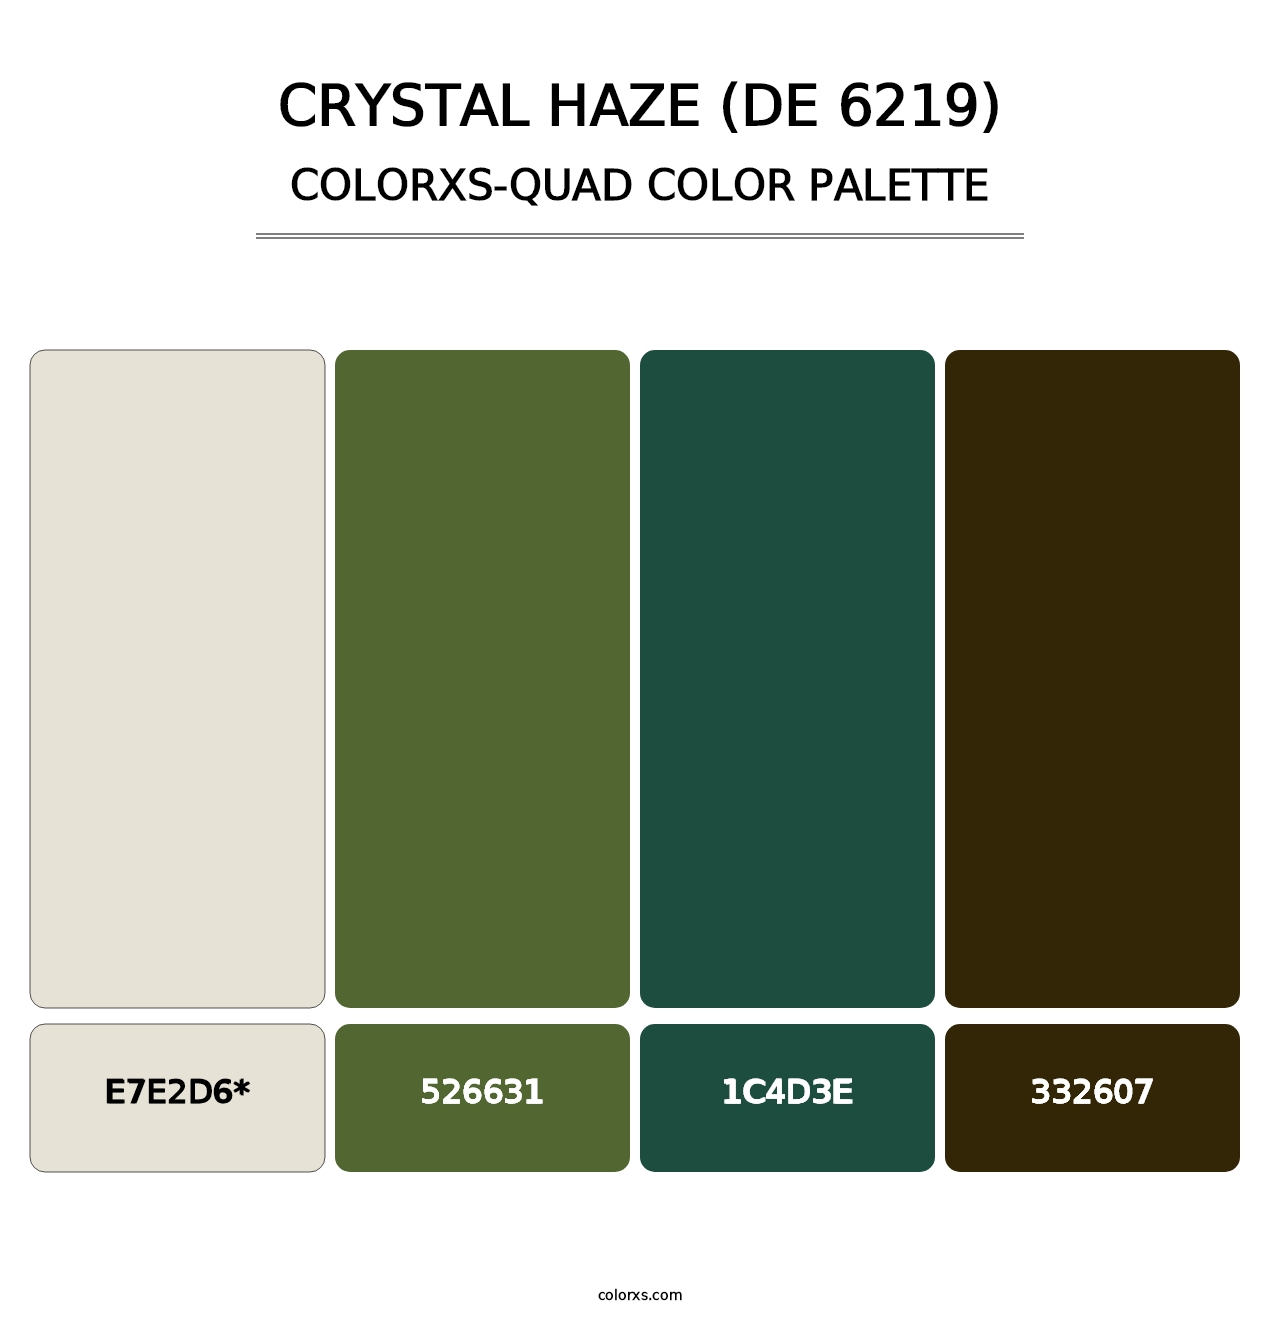 Crystal Haze (DE 6219) - Colorxs Quad Palette